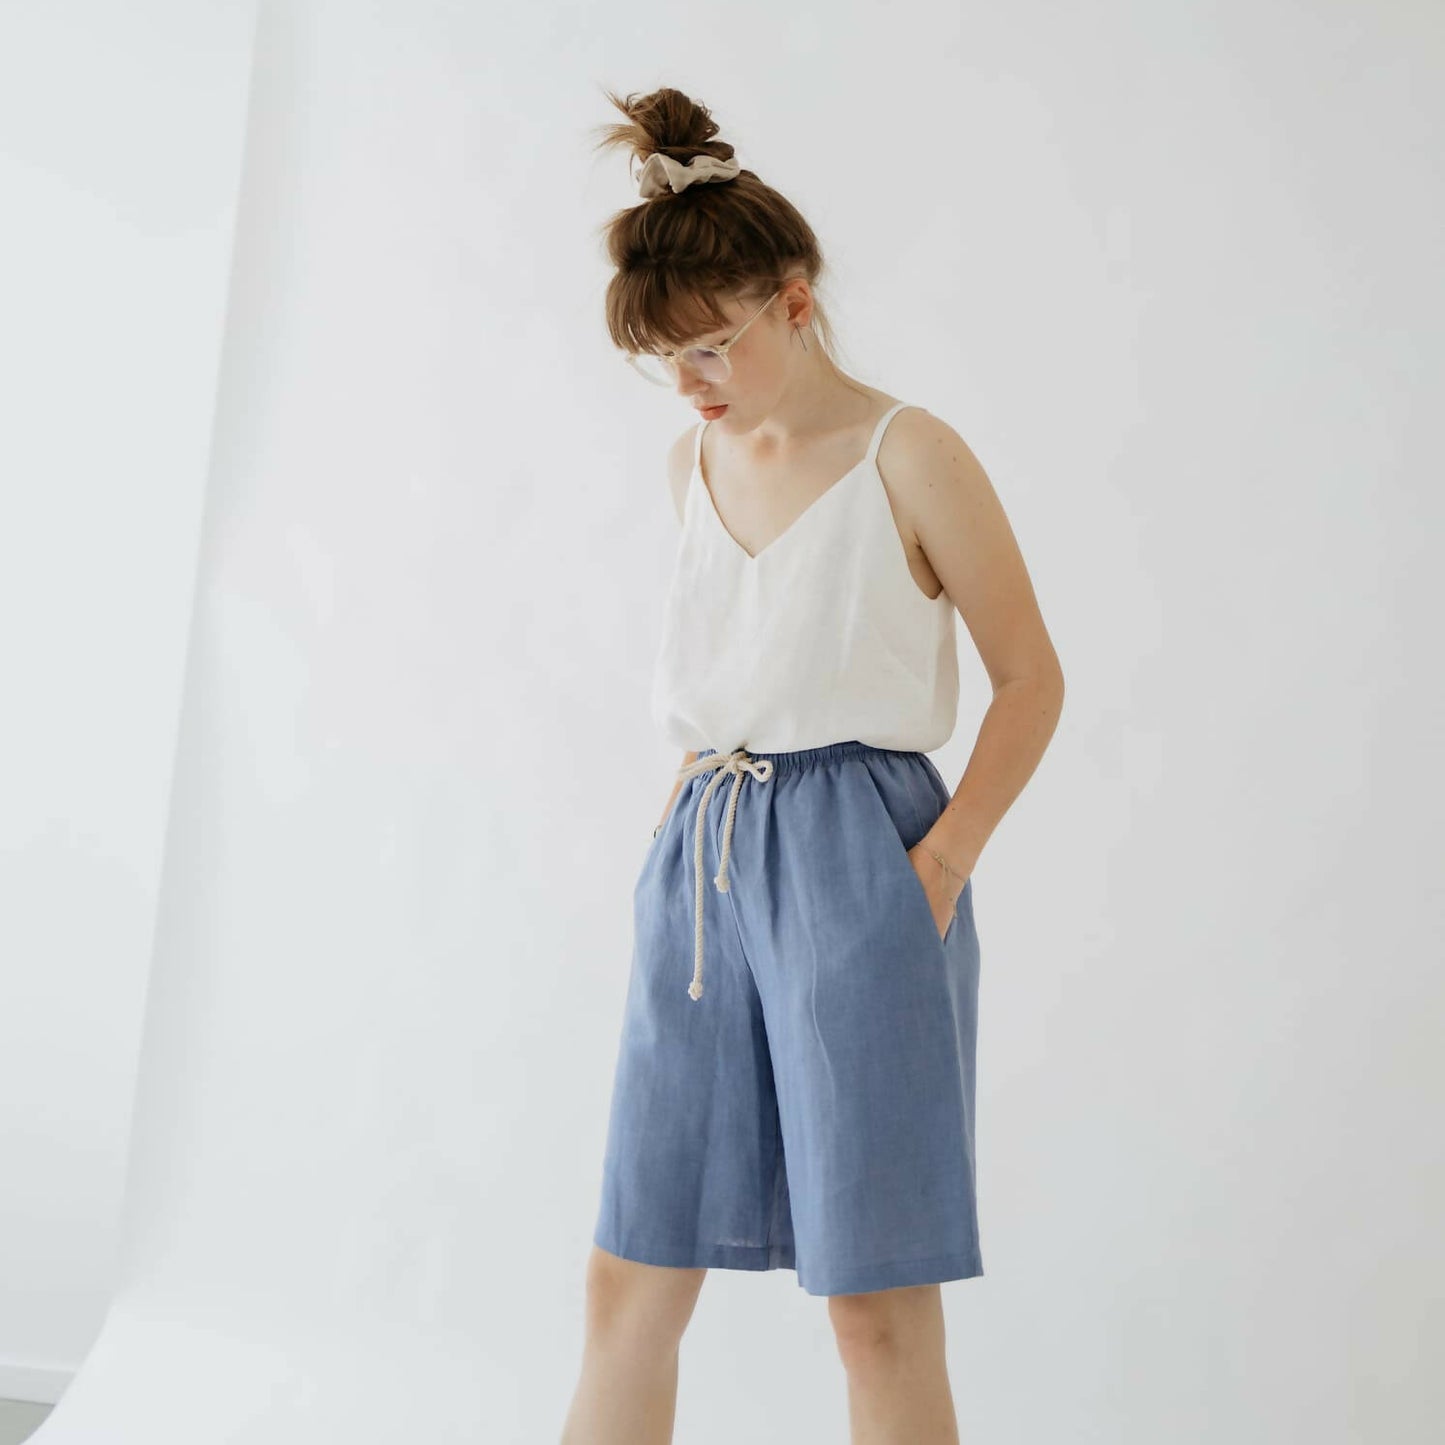 Cornflower blue linen loose shorts - 100% organic linen